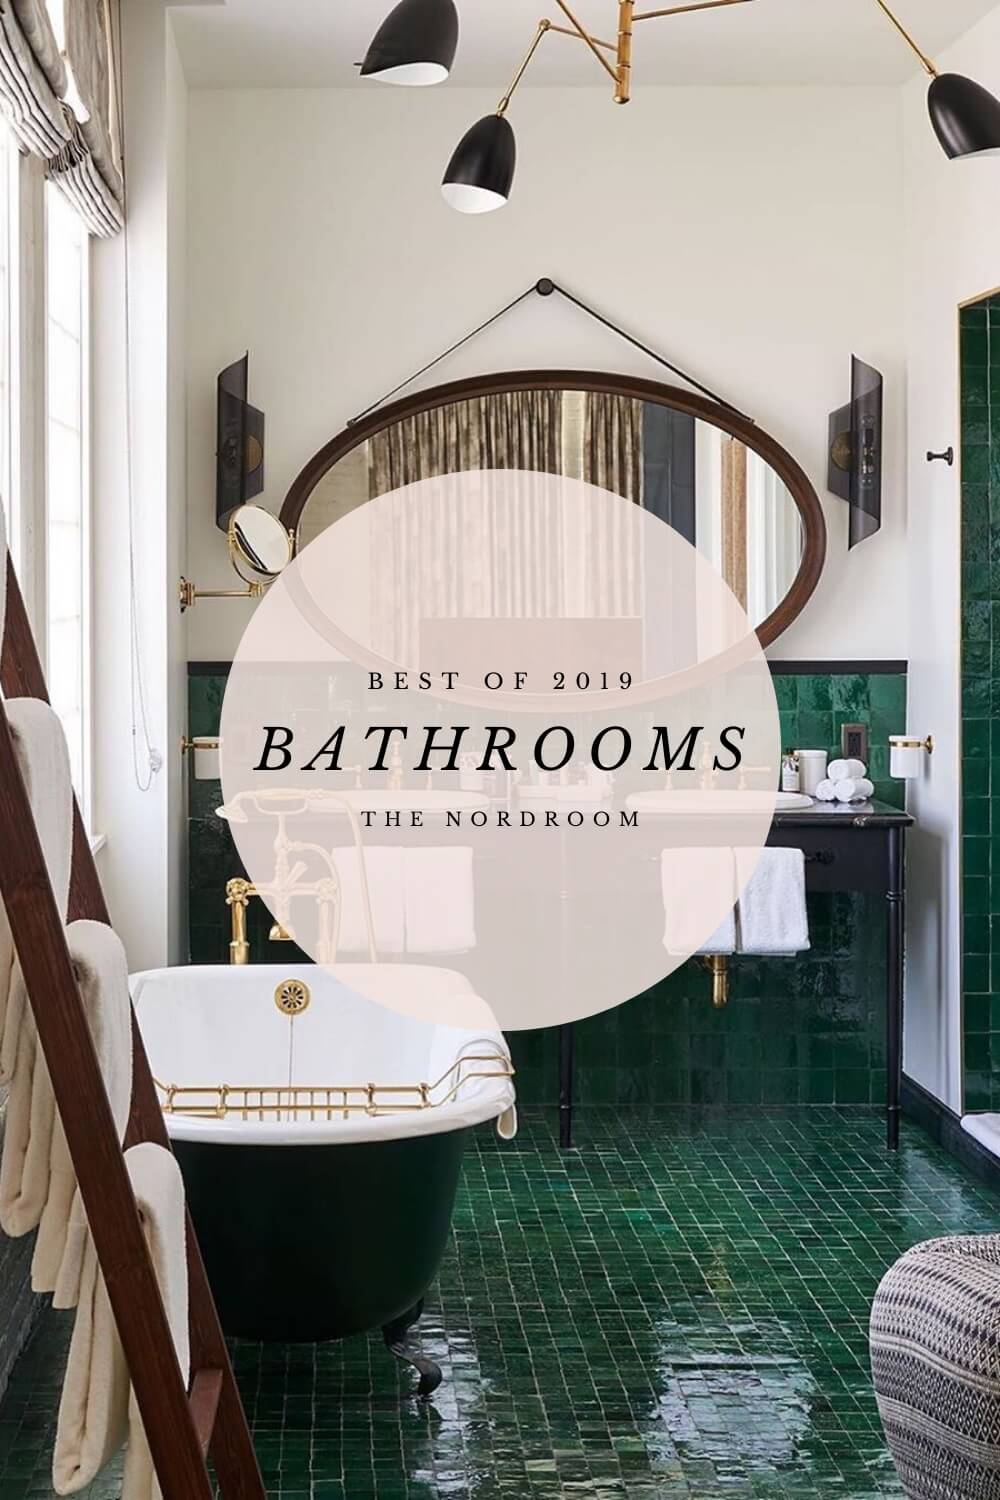 Best of 2019: Bathrooms